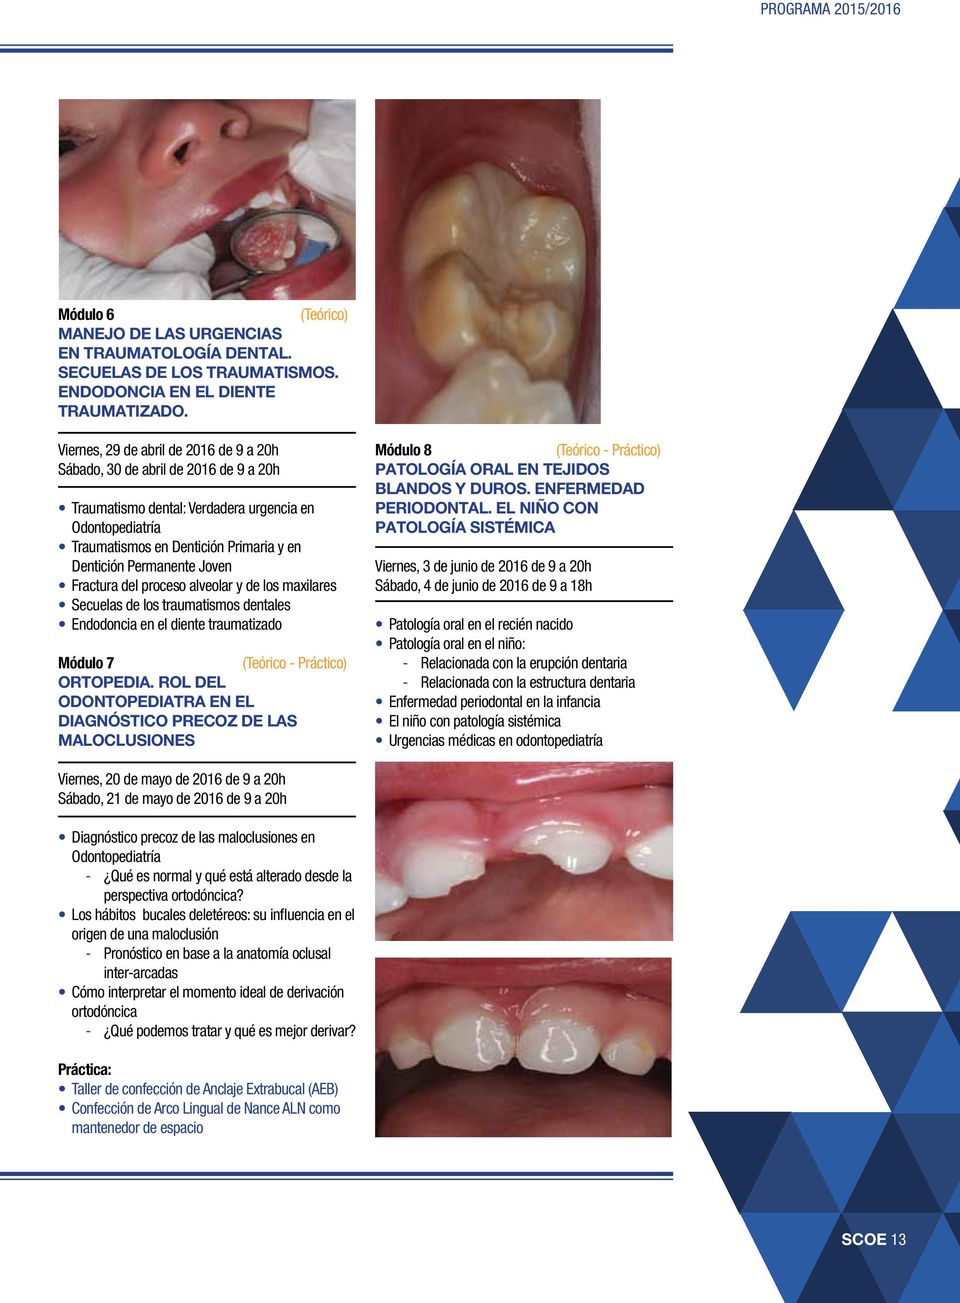 Joven Fractura del proceso alveolar y de los maxilares Secuelas de los traumatismos dentales Endodoncia en el diente traumatizado Módulo 7 ORTOPEDIA.